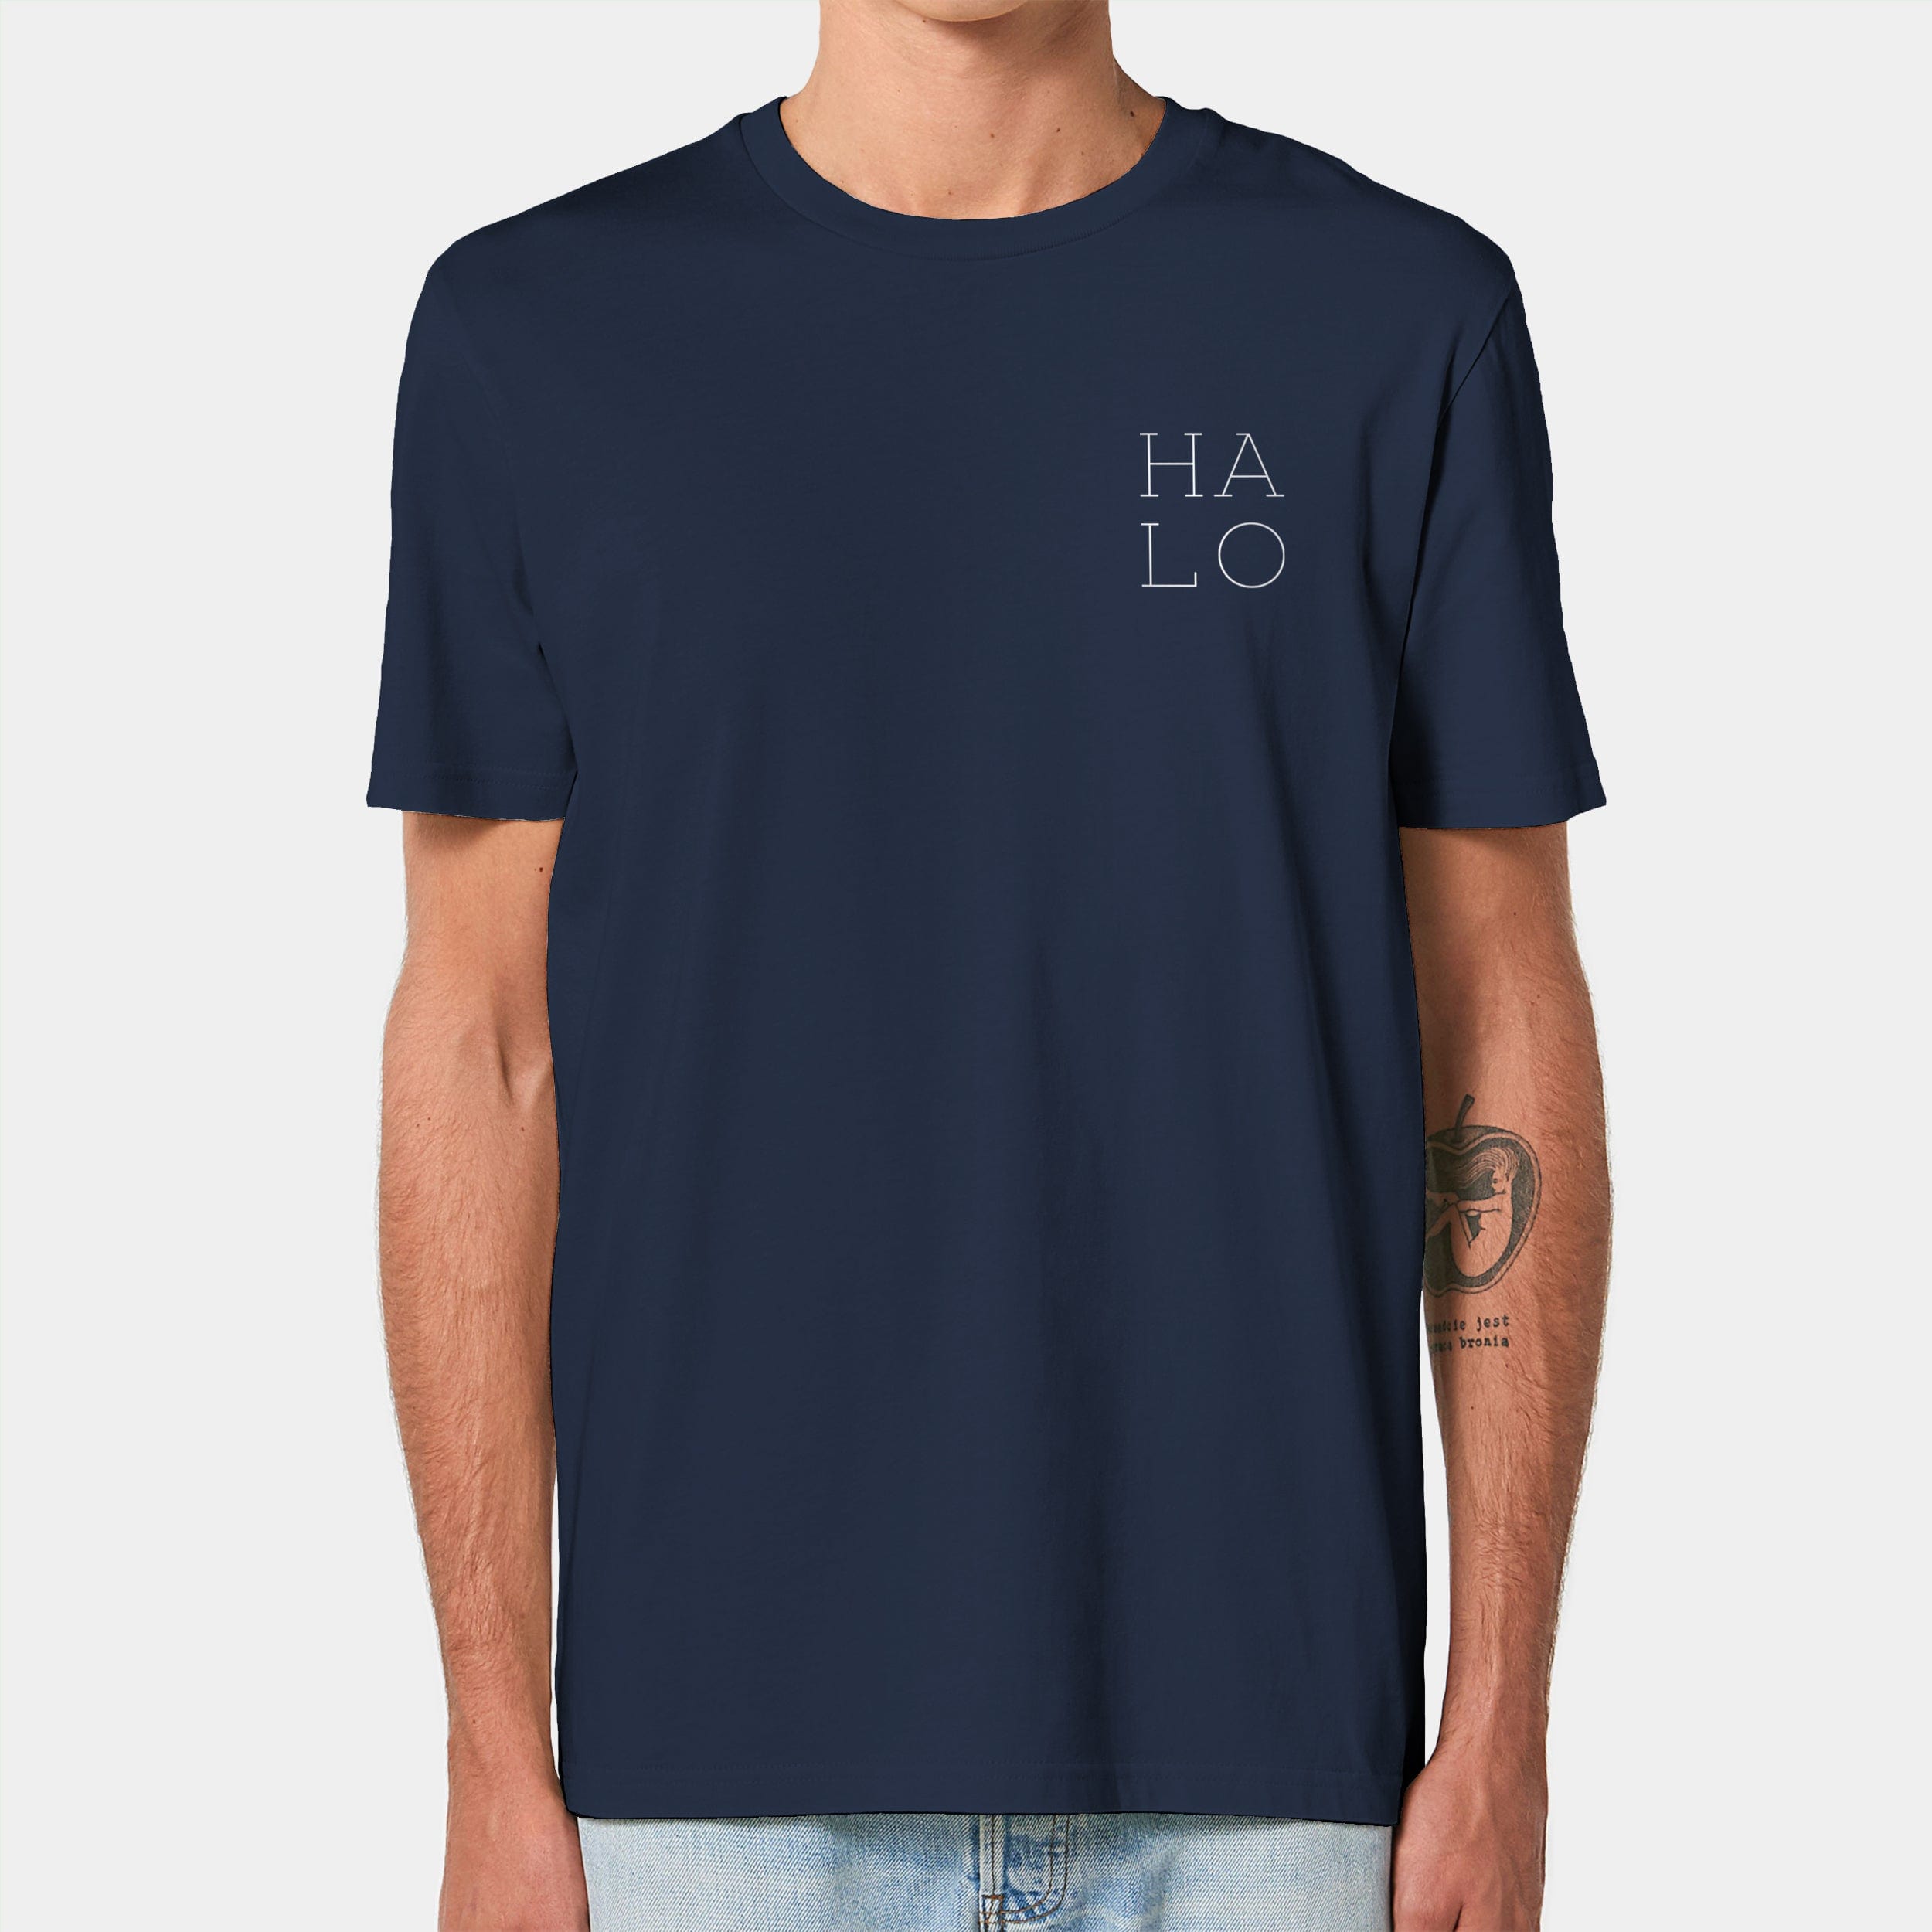 HEITER & LÄSSIG T-Shirt "HALO" XXS / french navy - aus nachhaltiger und fairer Produktion